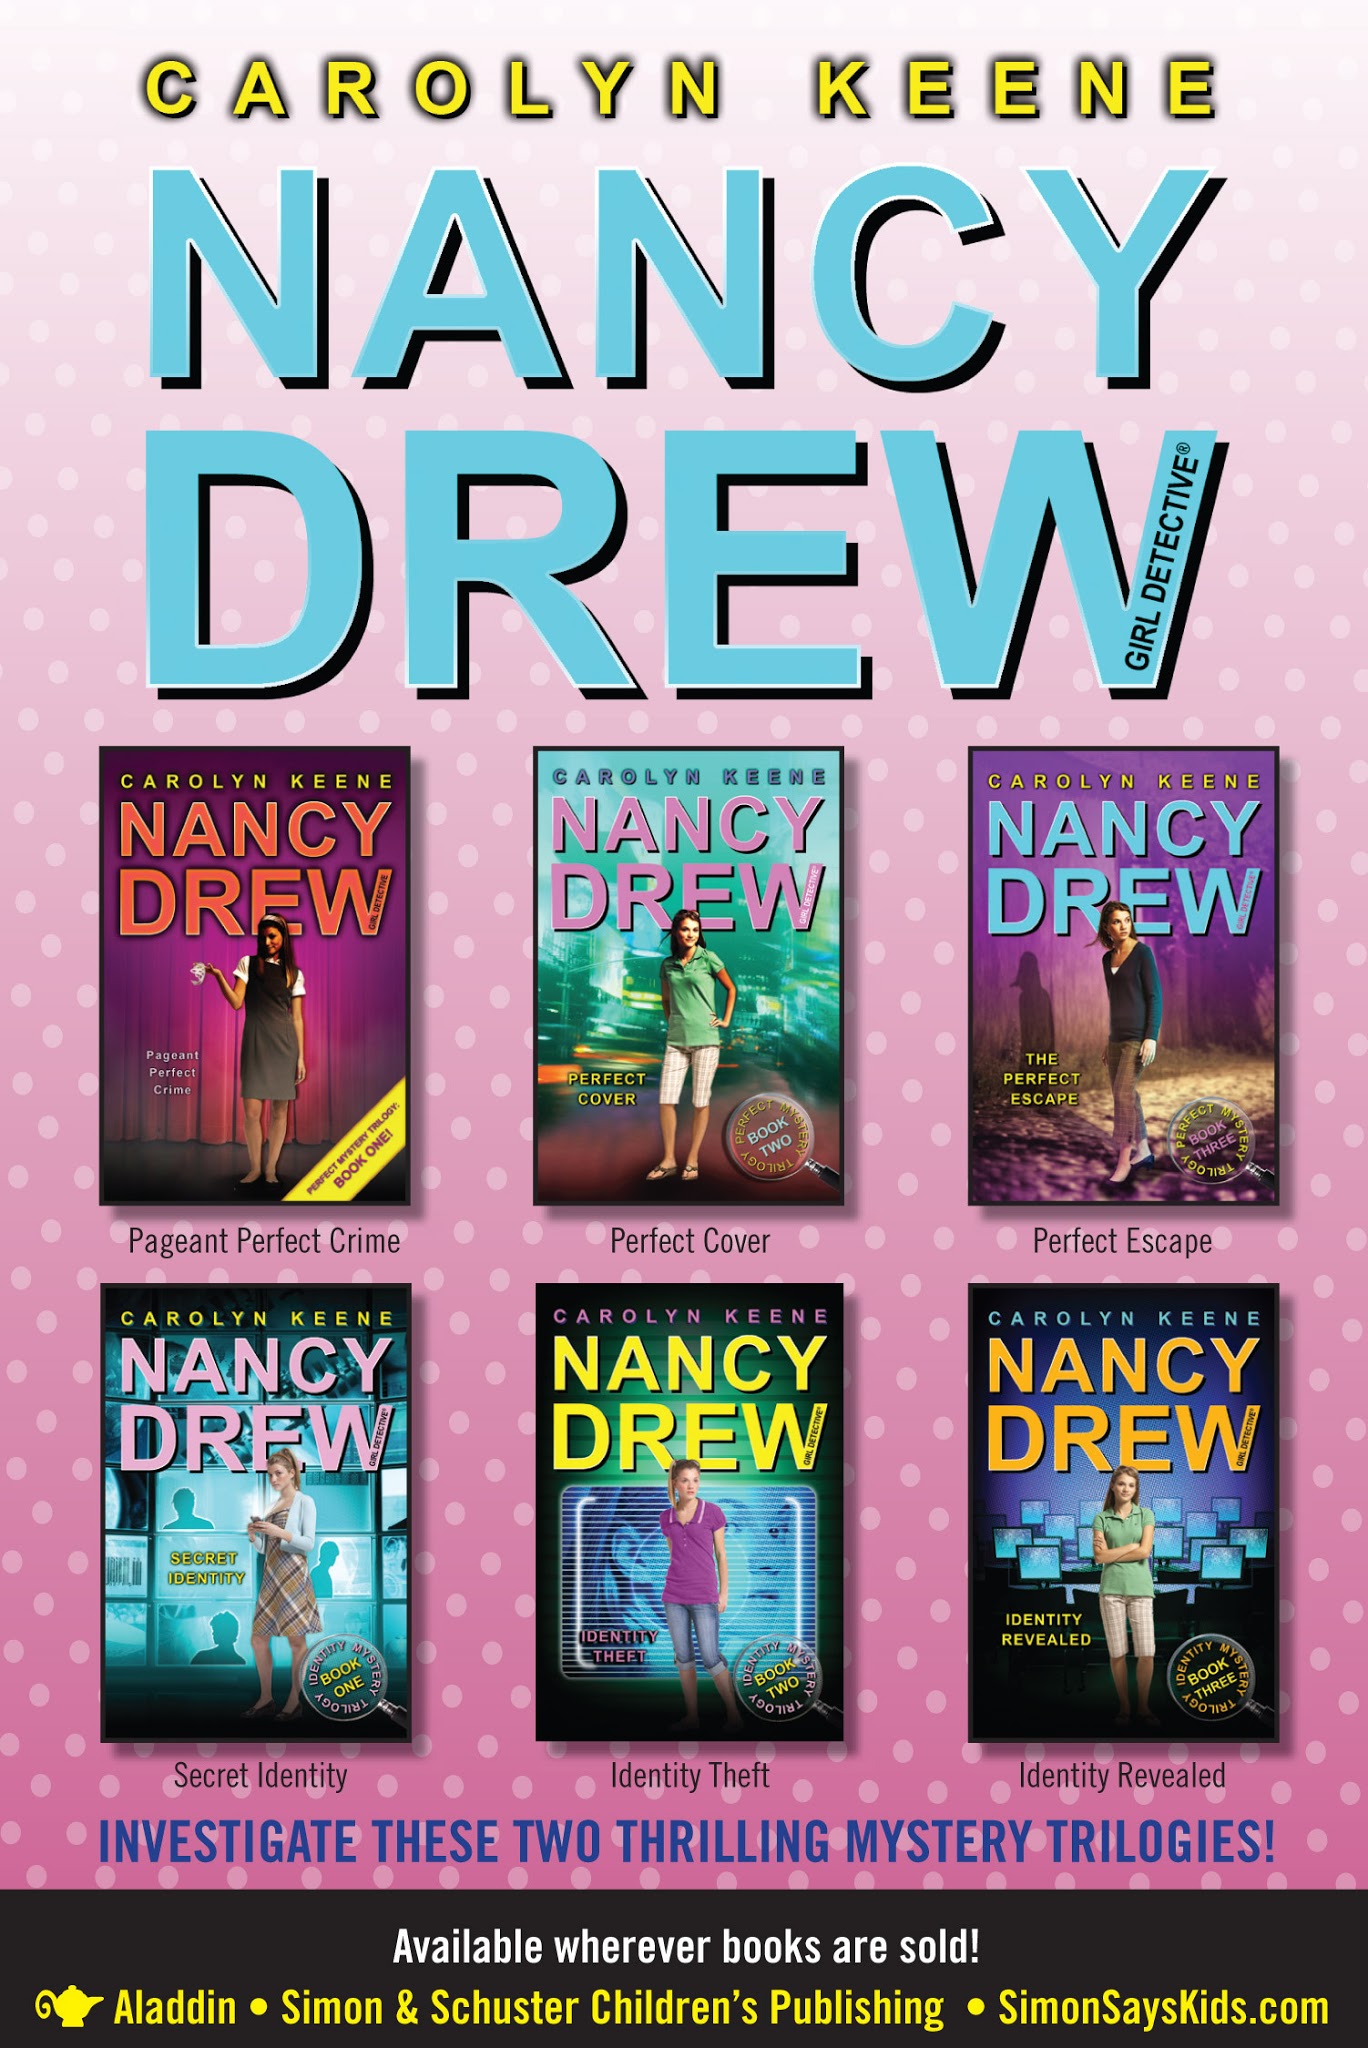 Read online Nancy Drew comic -  Issue #16 - 96